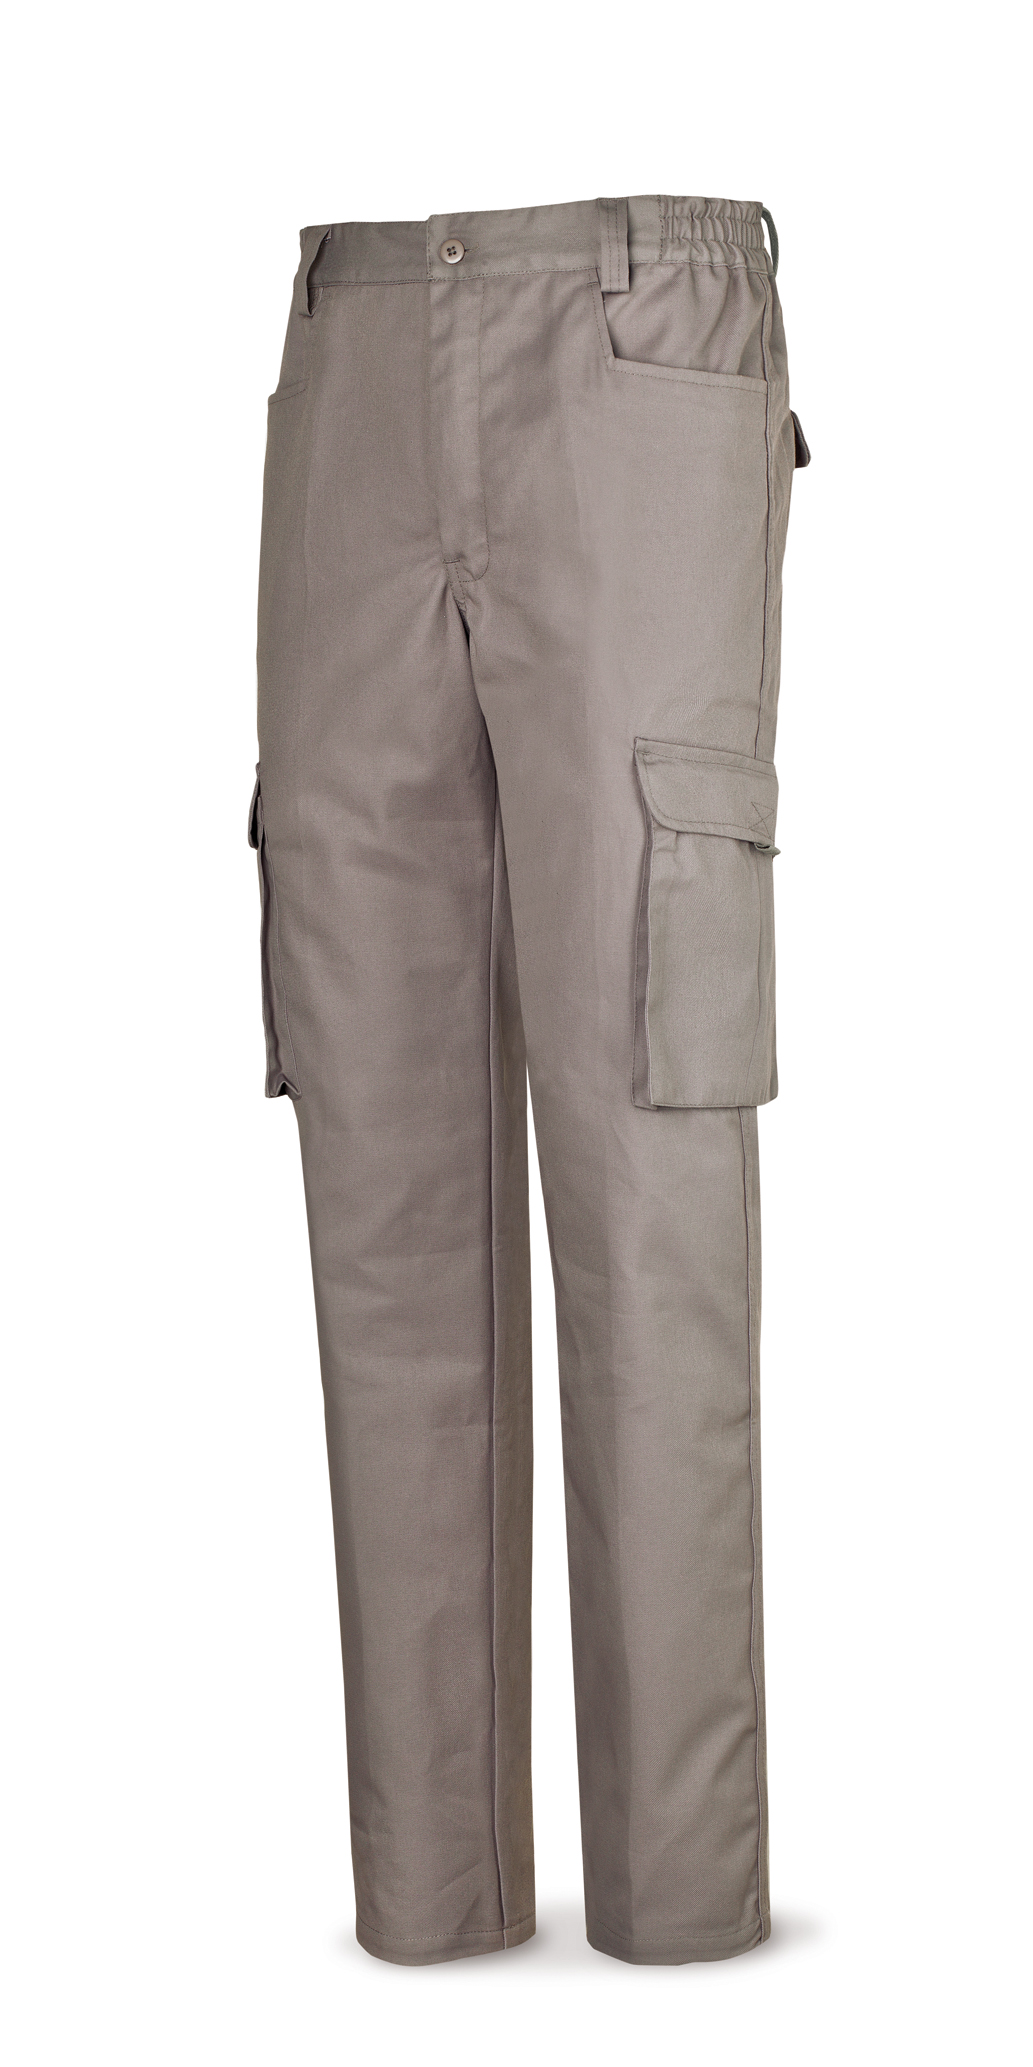 488-PTOPG Vetements de travail laboral Série Top Pantalon gris en coton 245 g. Multi-poches